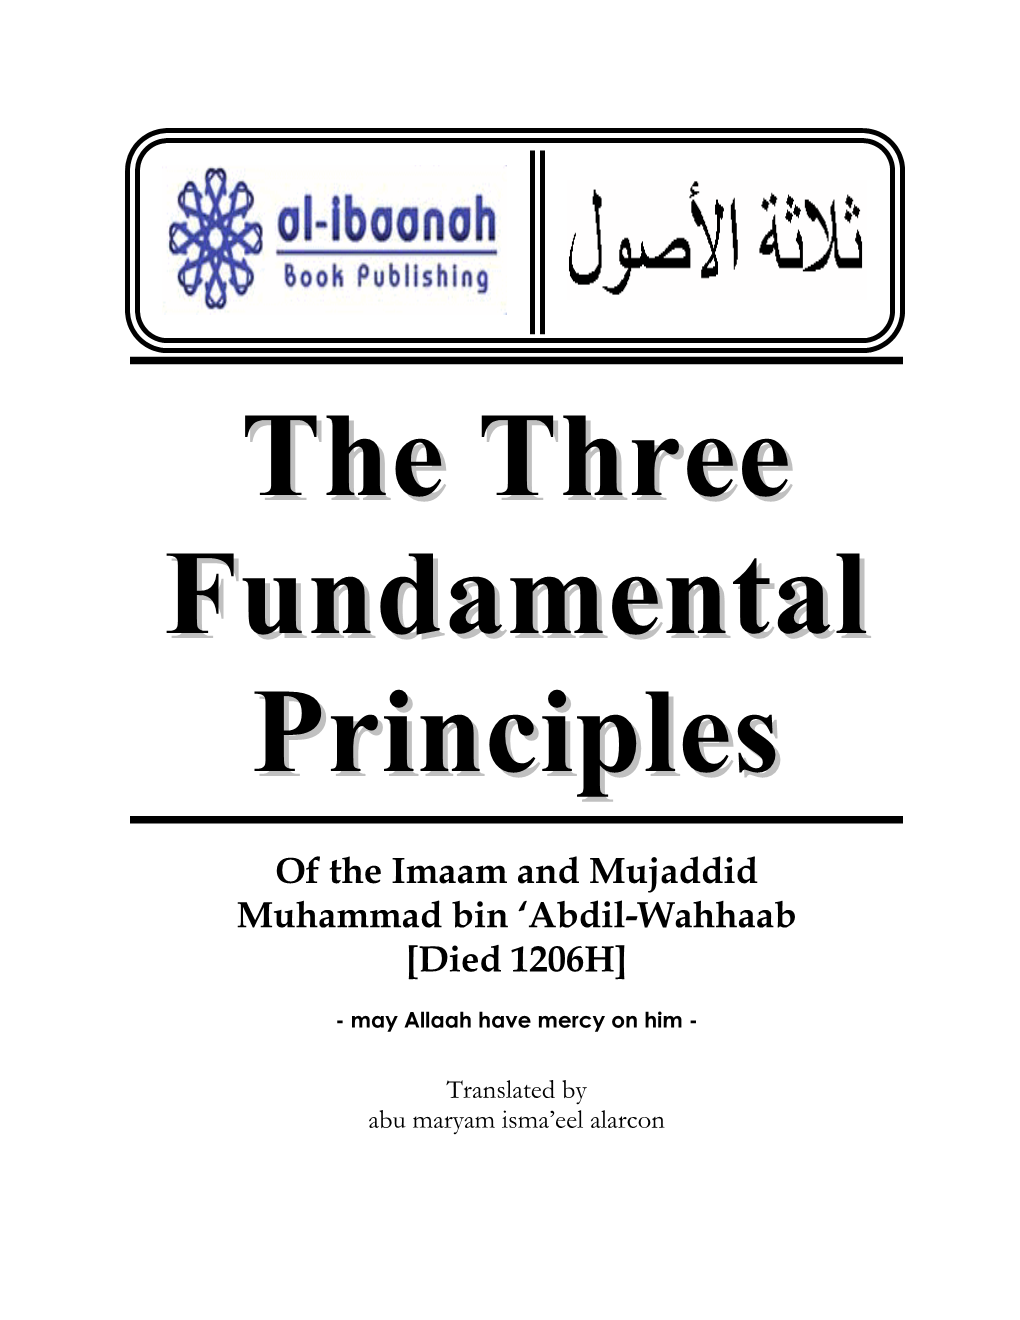 Of the Imaam and Mujaddid Muhammad Bin 'Abdil-Wahhaab